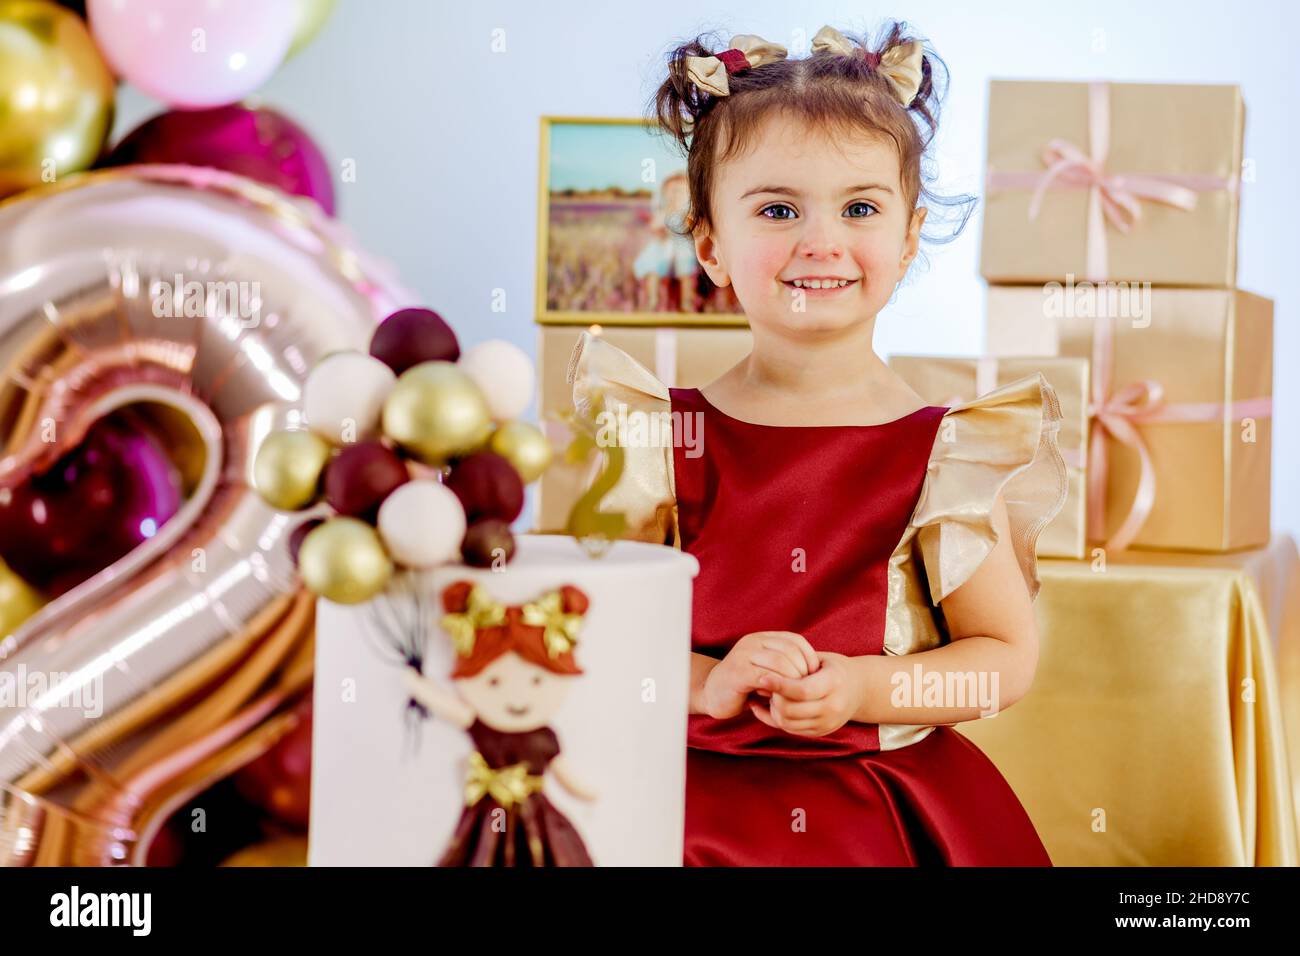 Zwei Jahre altes kleines lächelndes Mädchen, das neben dem Geburtstagskuchen steht und die Kamera aufmerksam anschaut. Schöne Baby Mädchen Geburtstag Fotoshooting Stockfoto